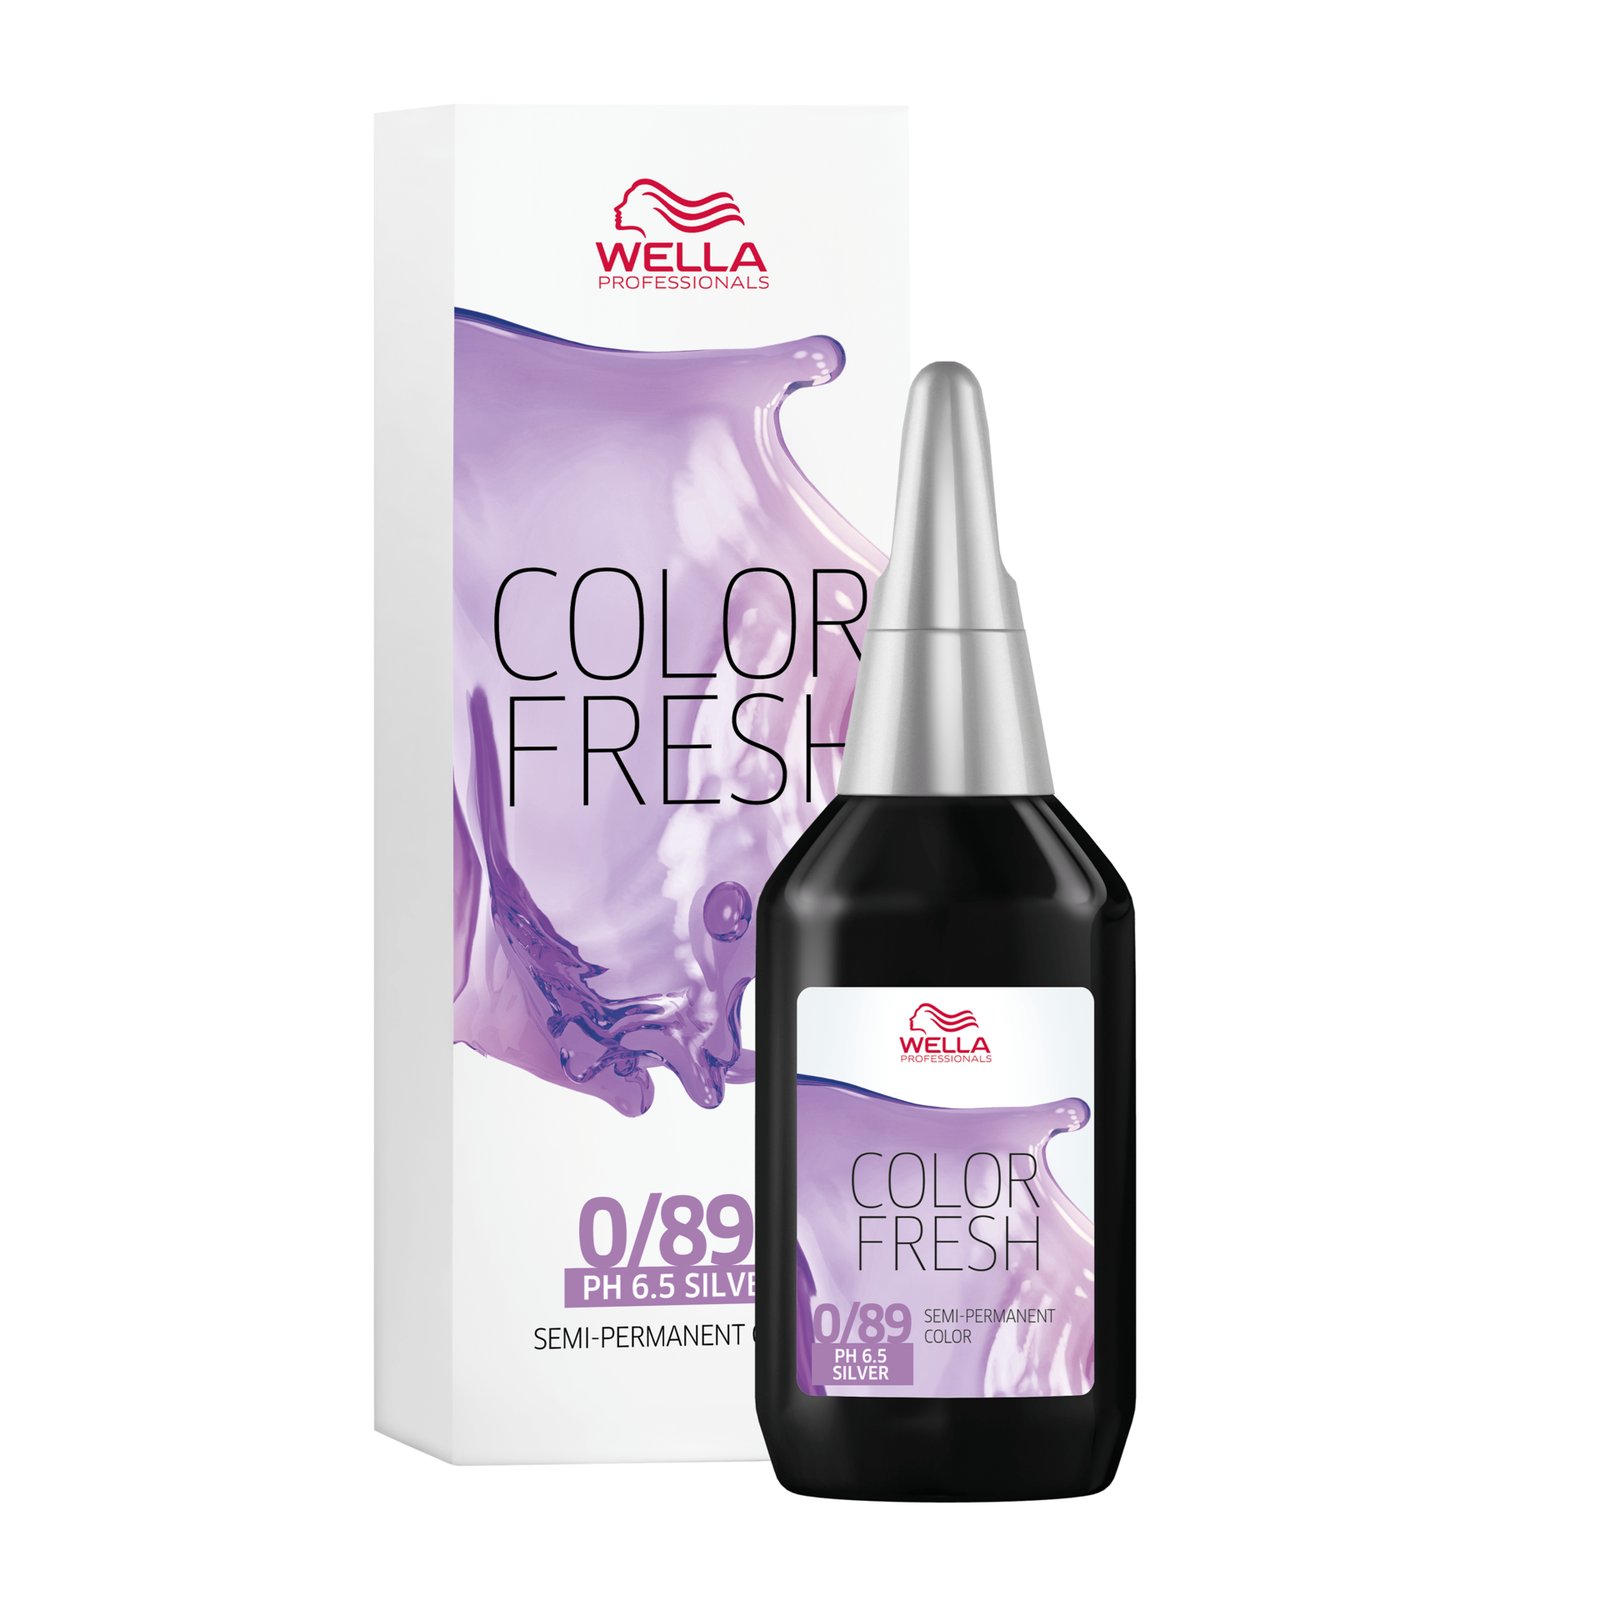 Wella Professionals Color Fresh 0/89 Pearl Cendre 75 ml